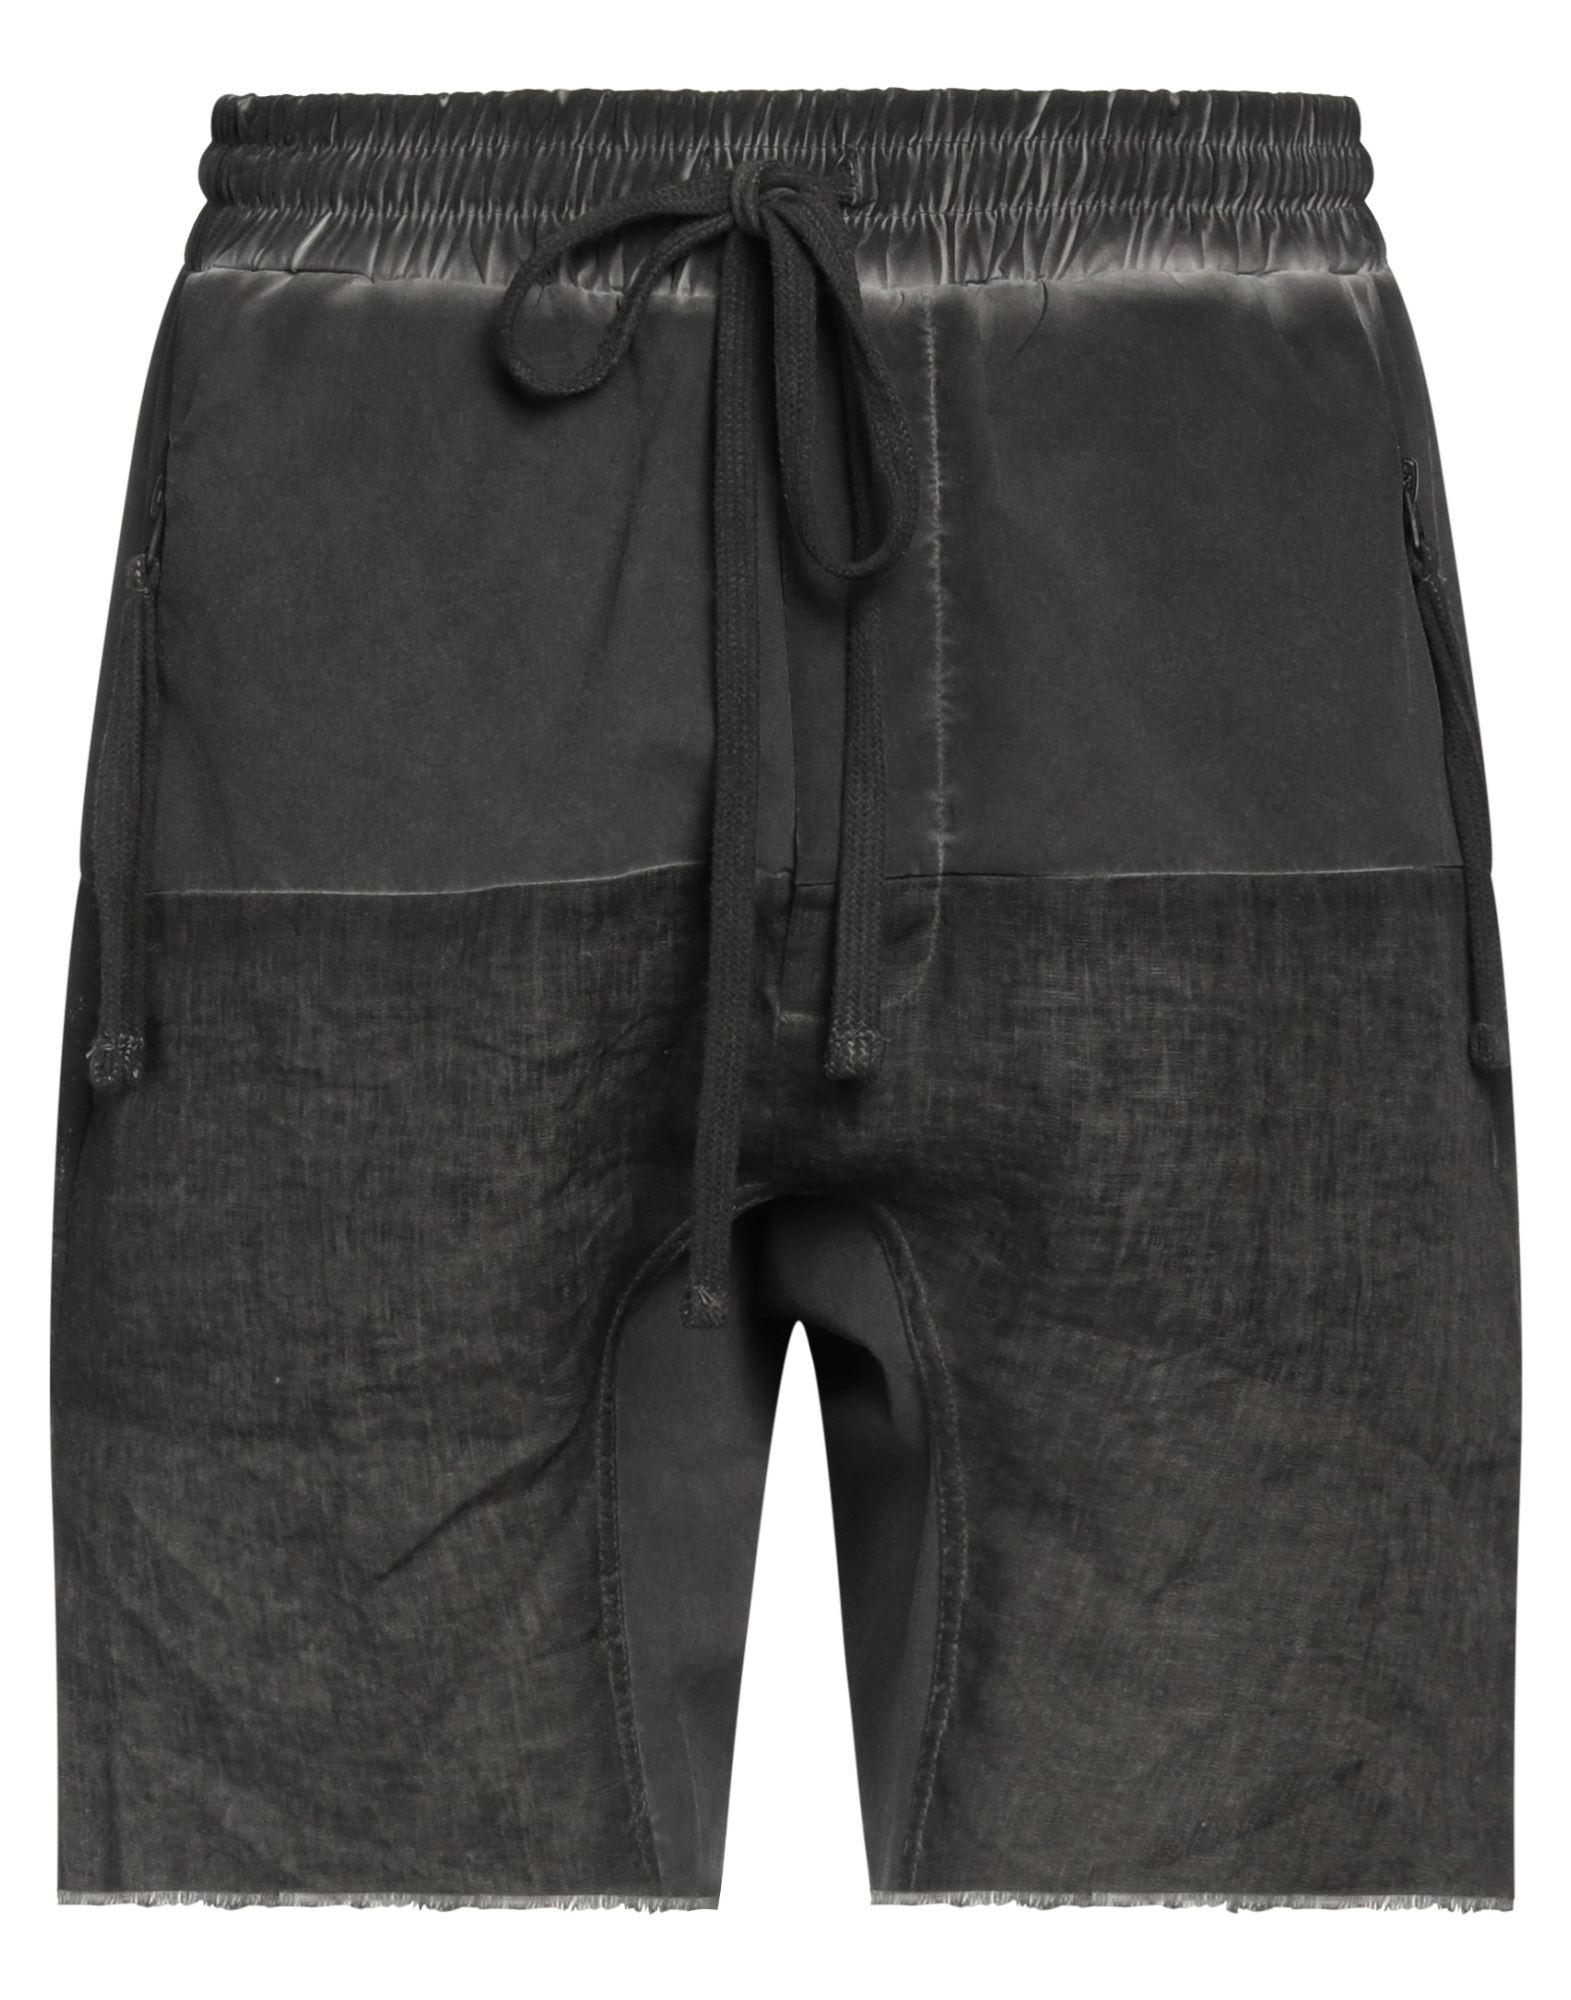 Thom Krom Man Shorts & Bermuda Shorts Steel Grey Size S Linen, Nylon, Elastane